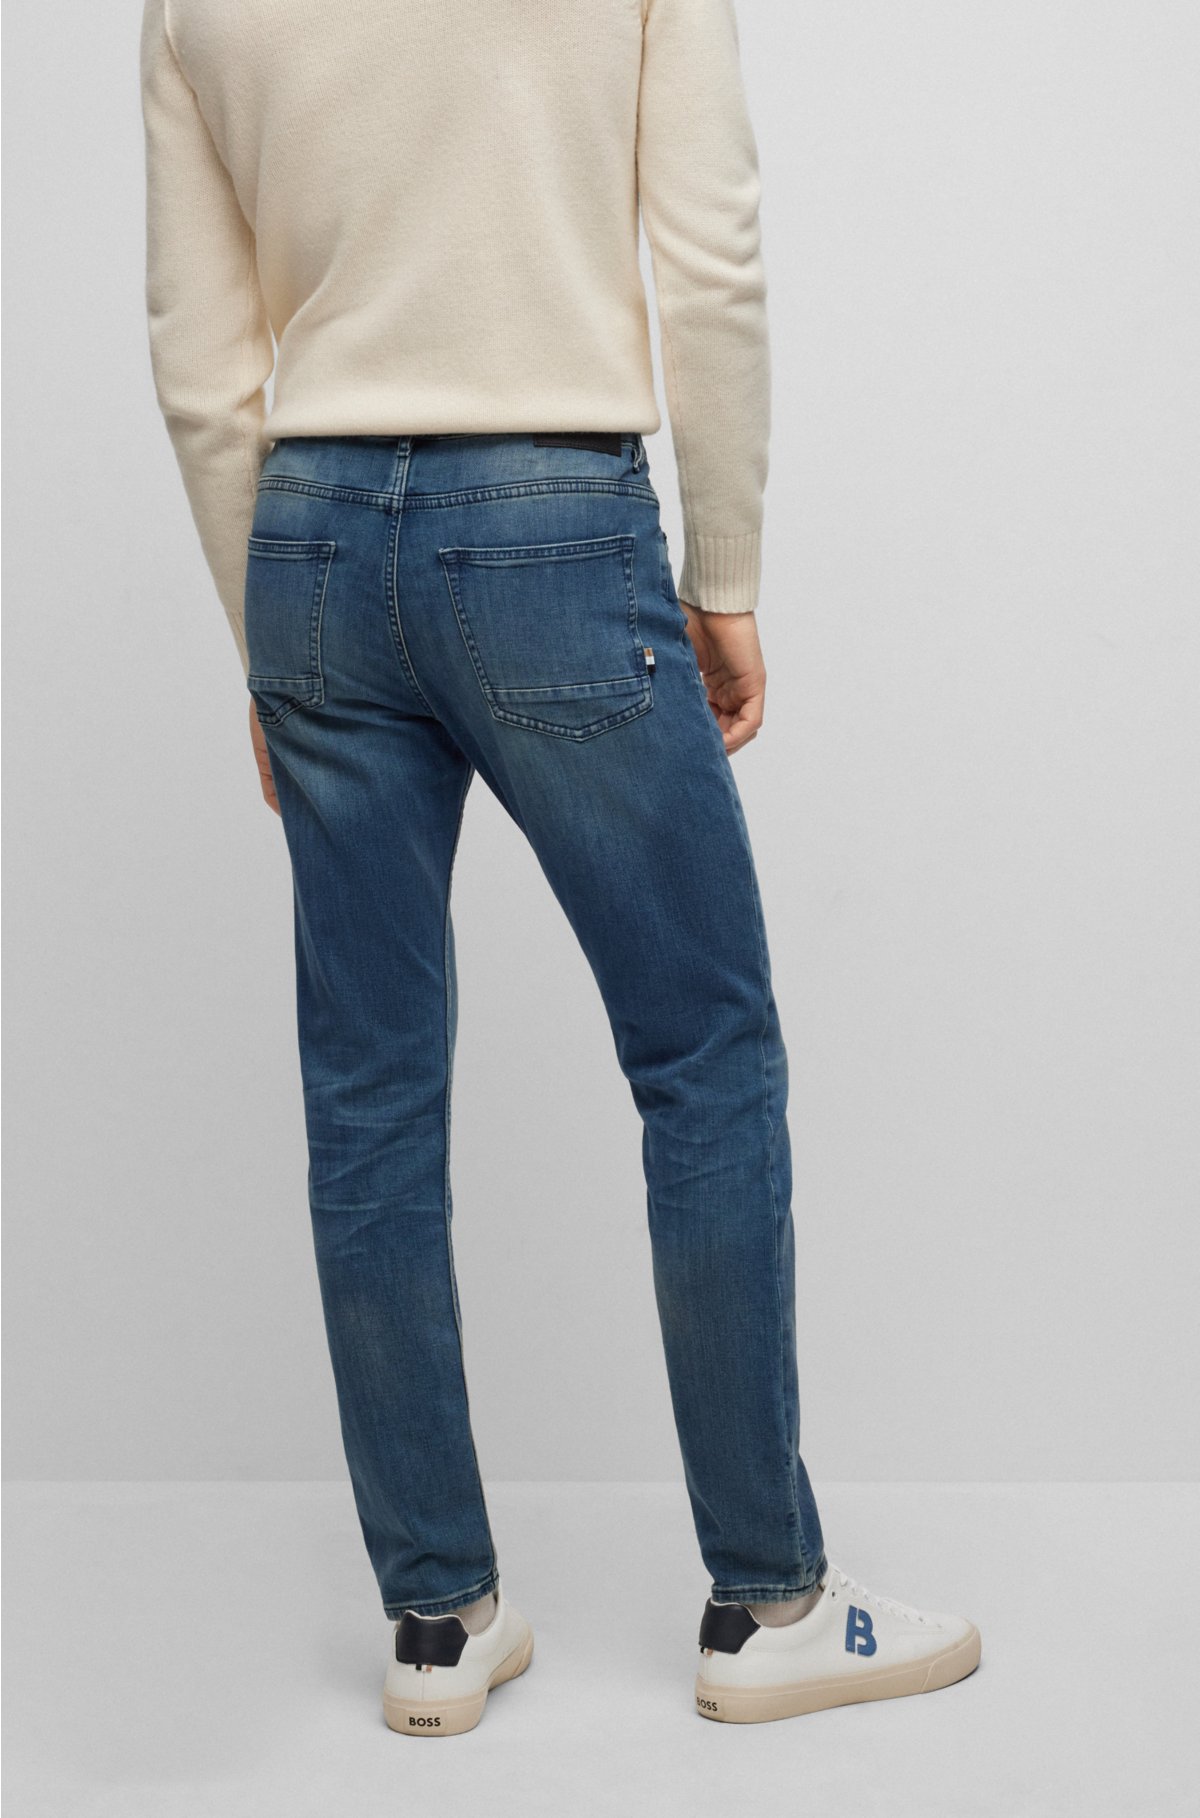 BOSS - Slim-fit jeans in super-soft blue denim